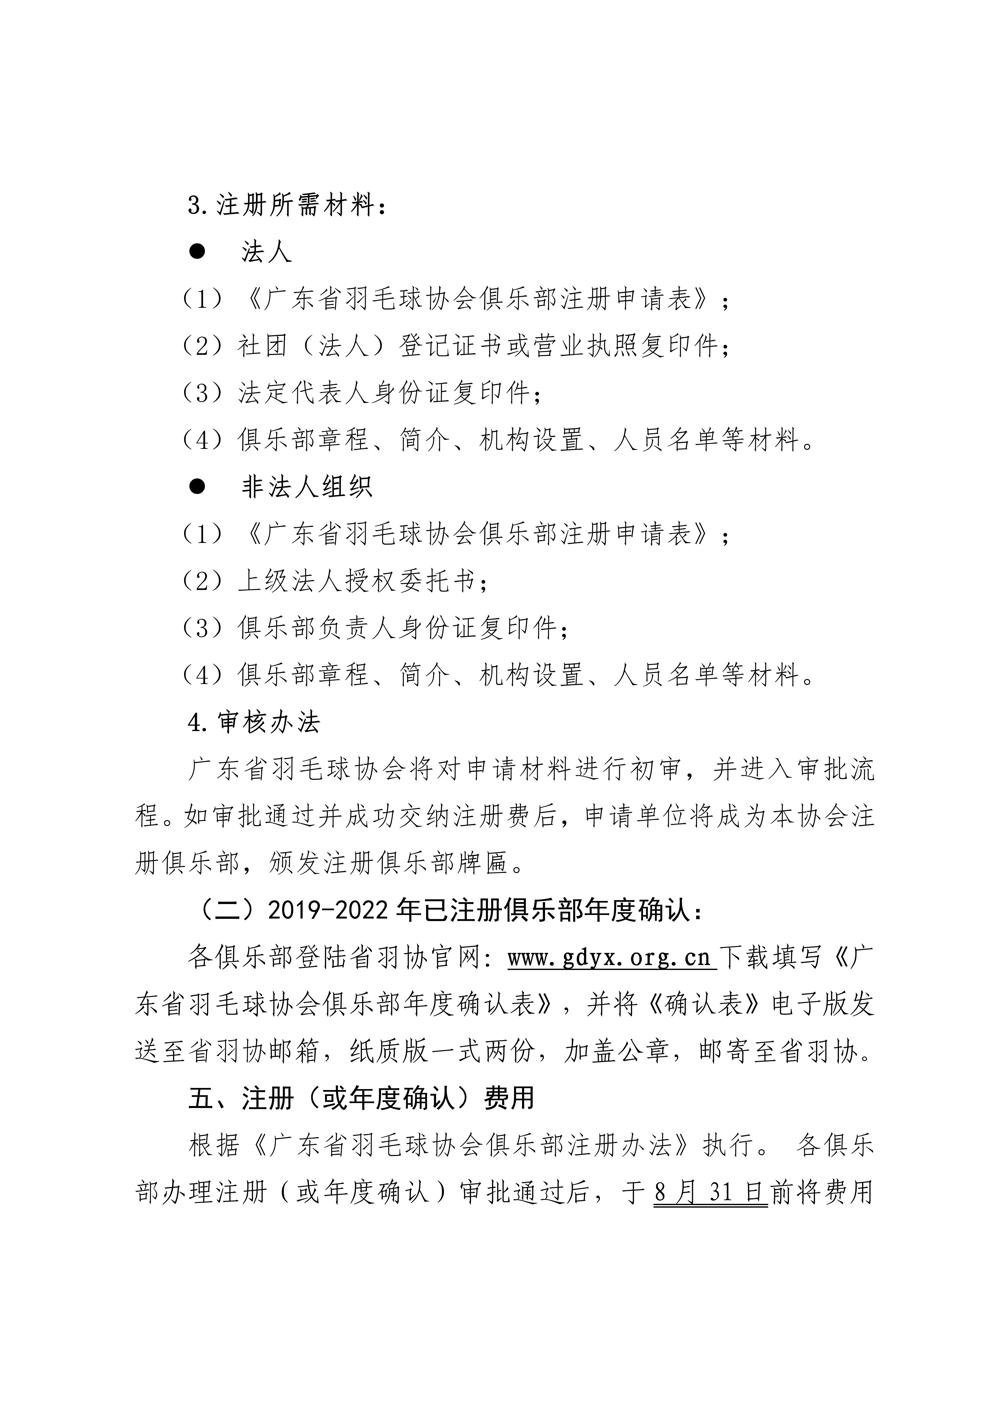 广东省羽毛球协会关于开展2022年度俱乐部注册工作的通知-合并版_02